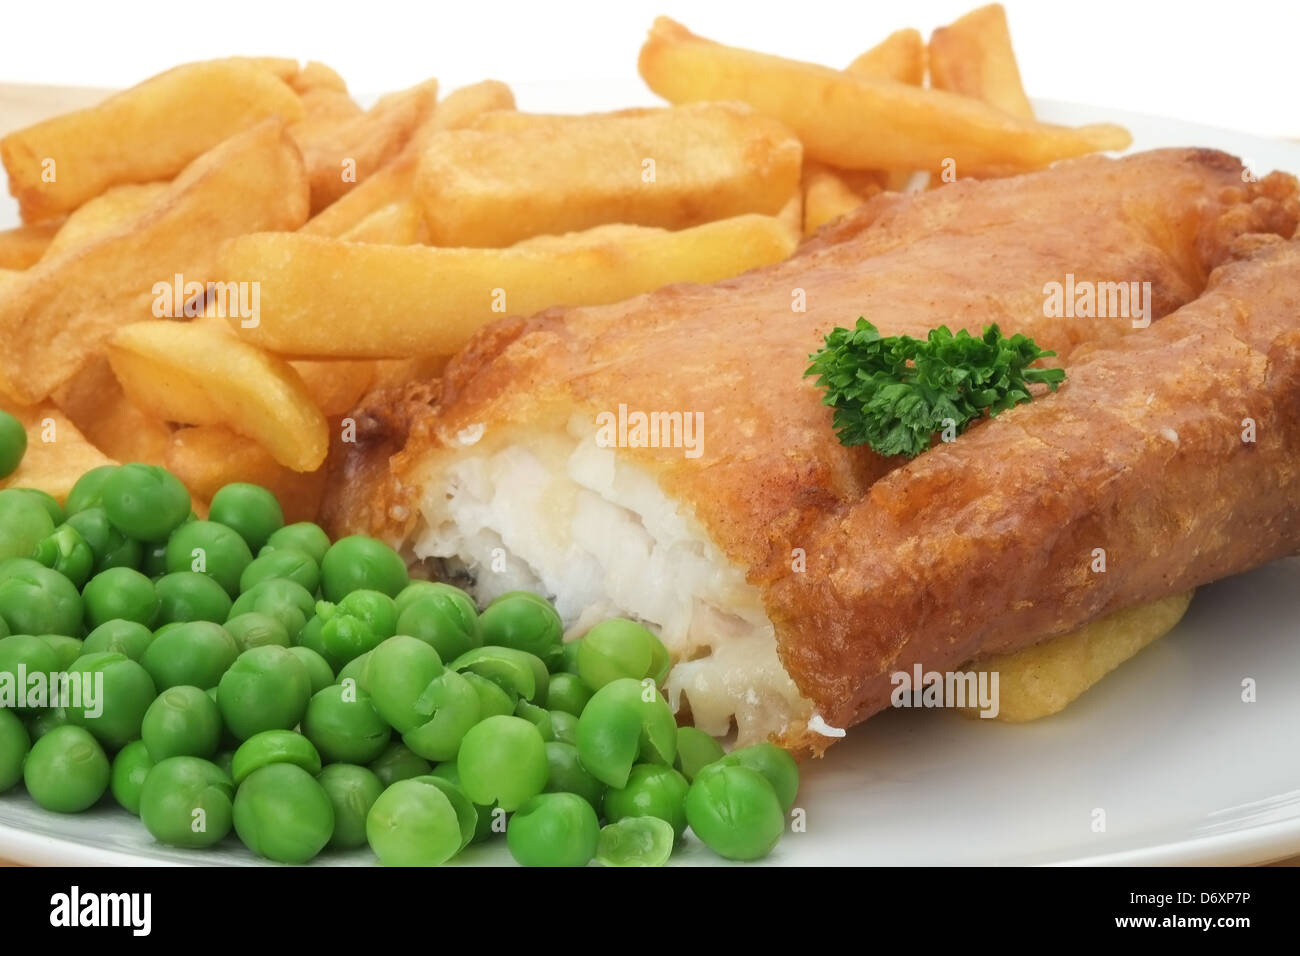 Close-up d'un plat de poisson, frites et petits pois - faible profondeur de champ Banque D'Images